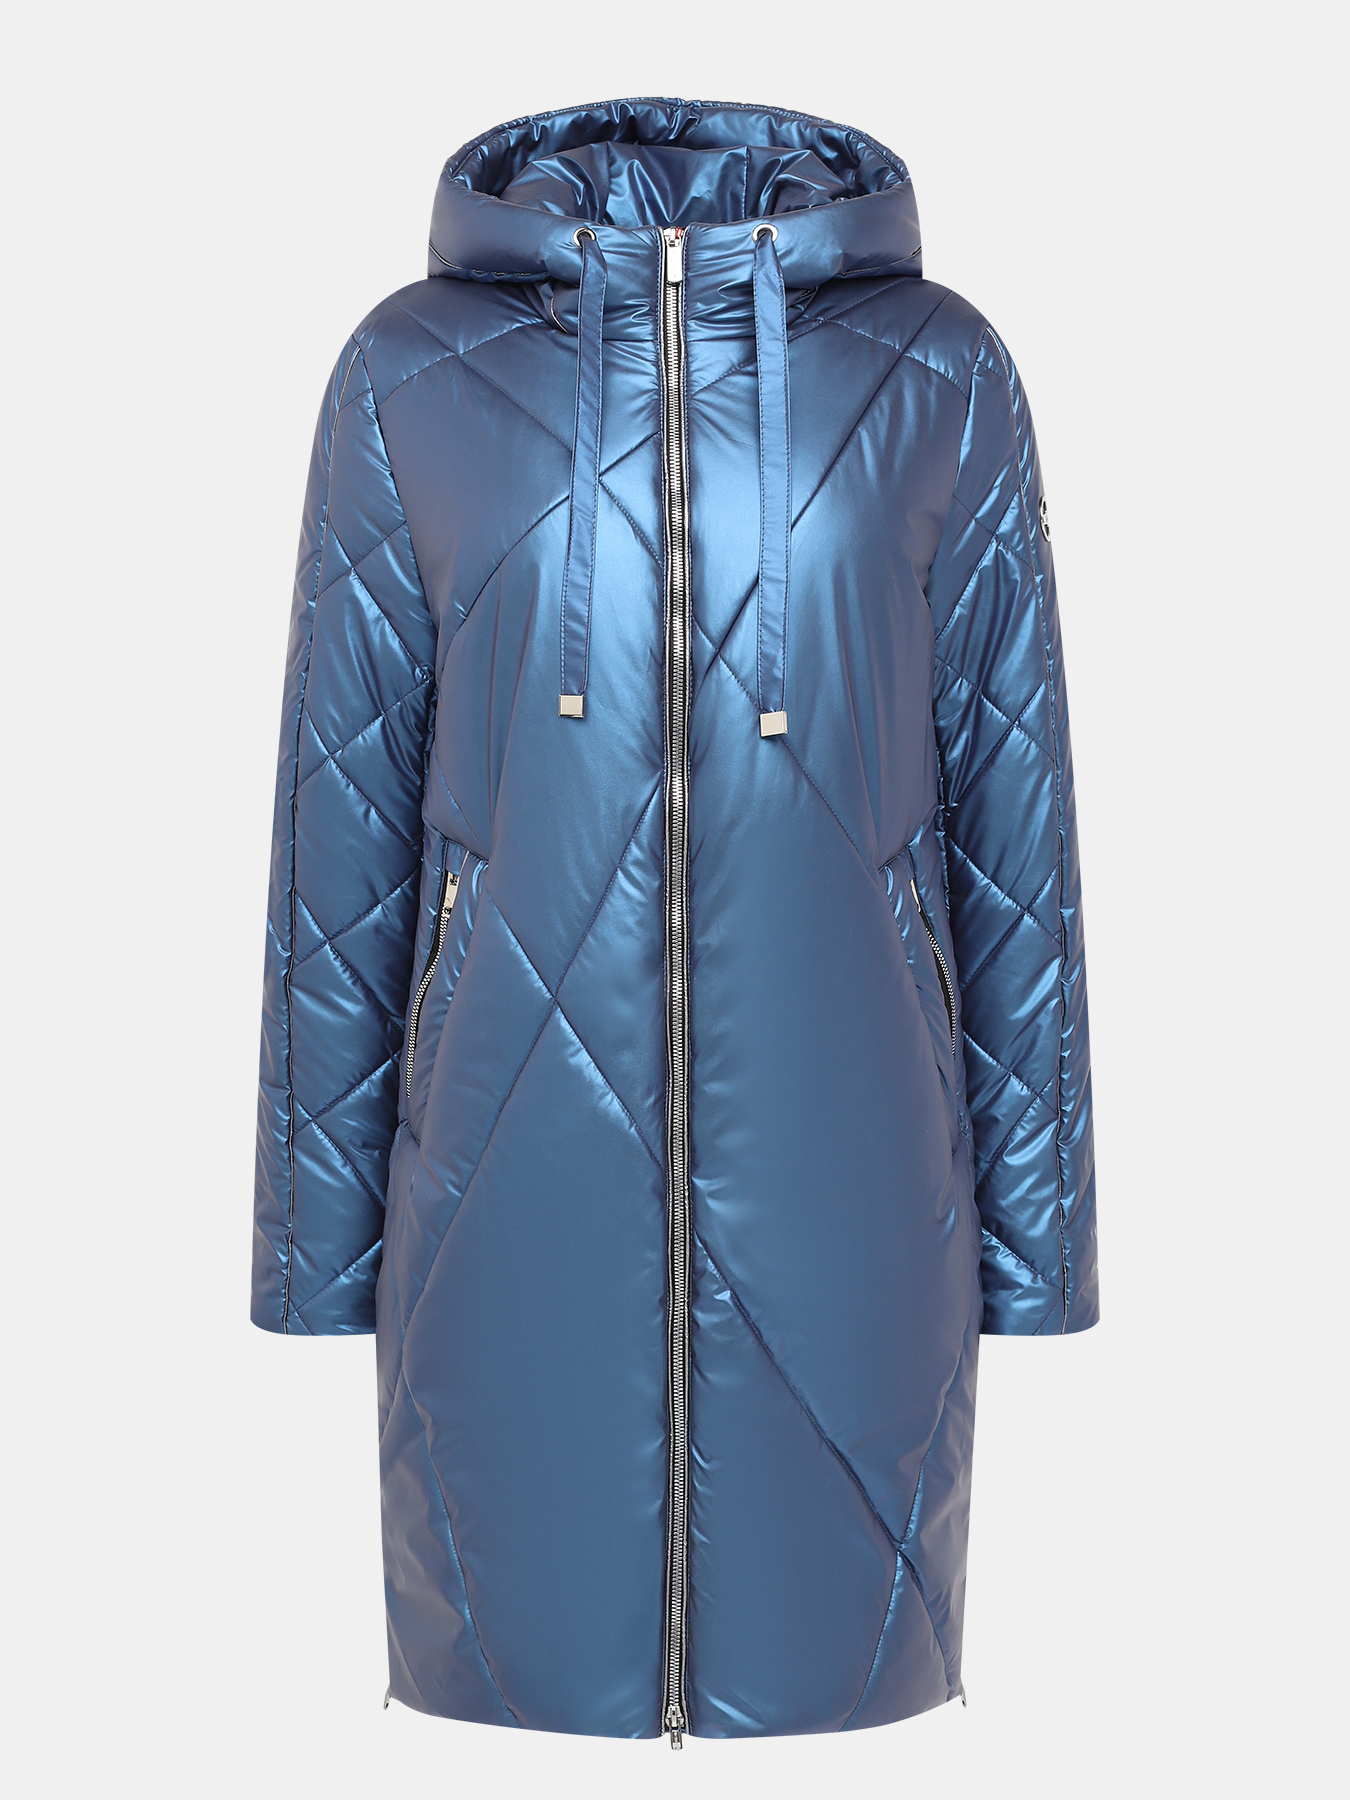 Пальто зимнее Maritta 433572-022, цвет синий, размер 48